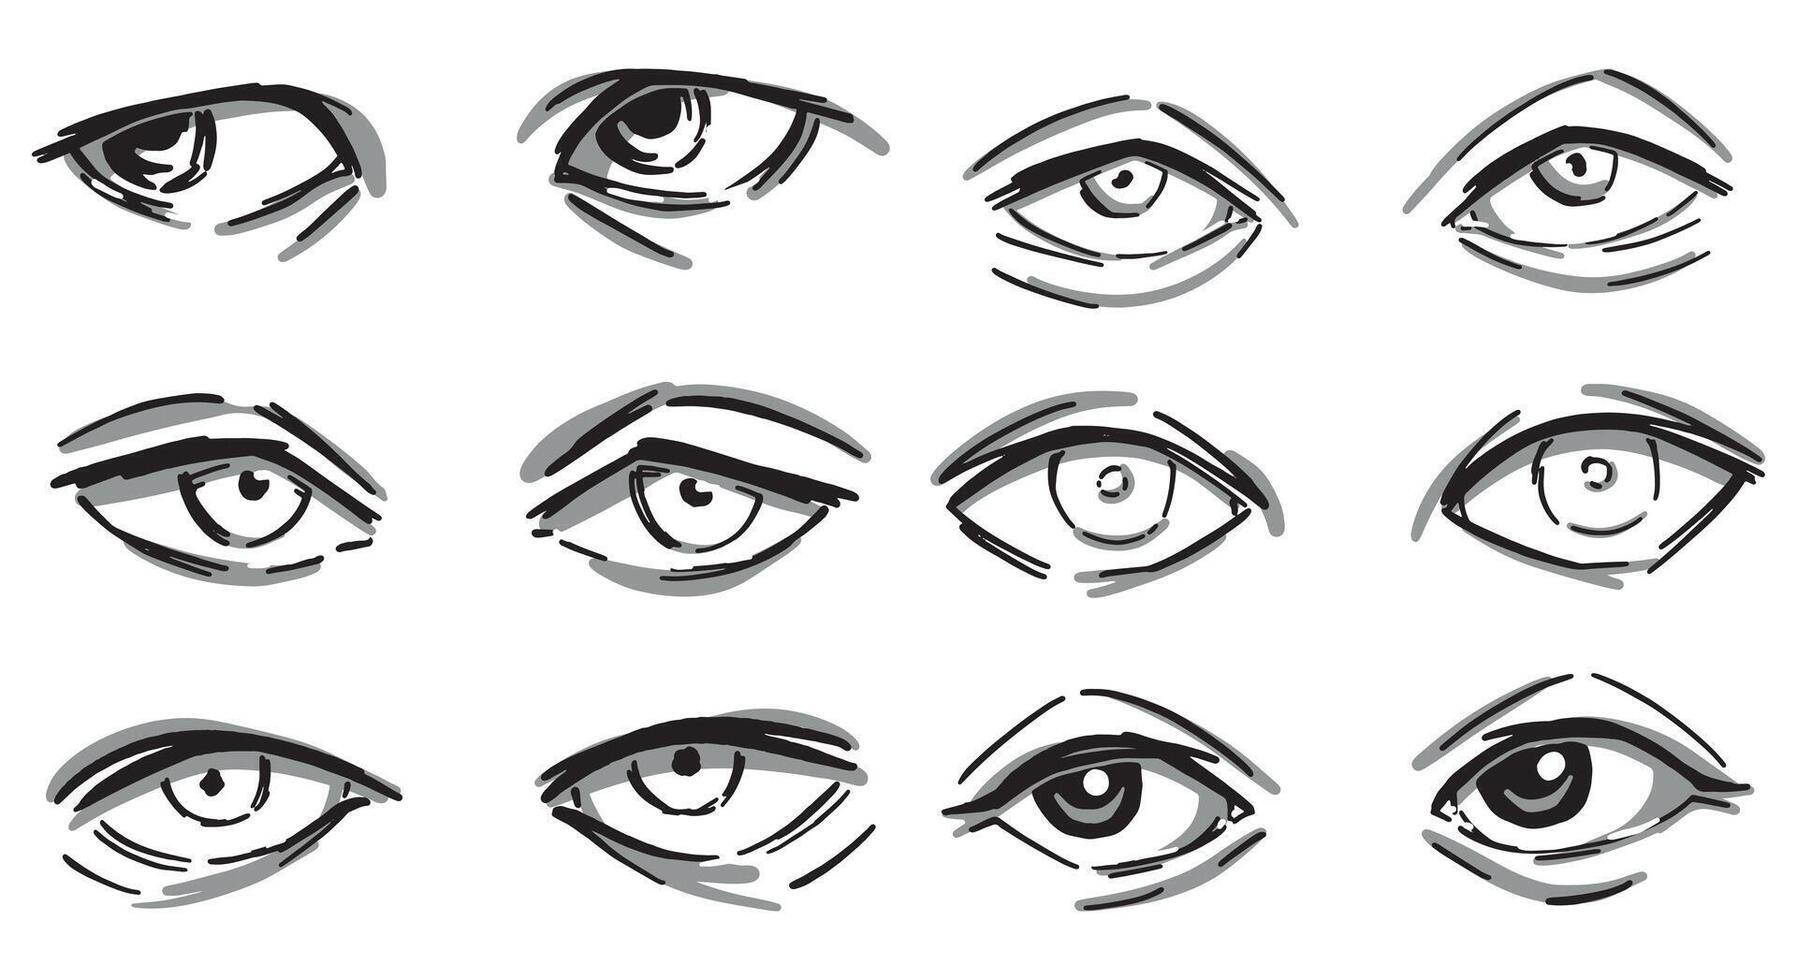 impostato di umano occhi monocromatico astratto schizzi. occhi coppie mano disegnato vettore illustrazione isolato su bianca.